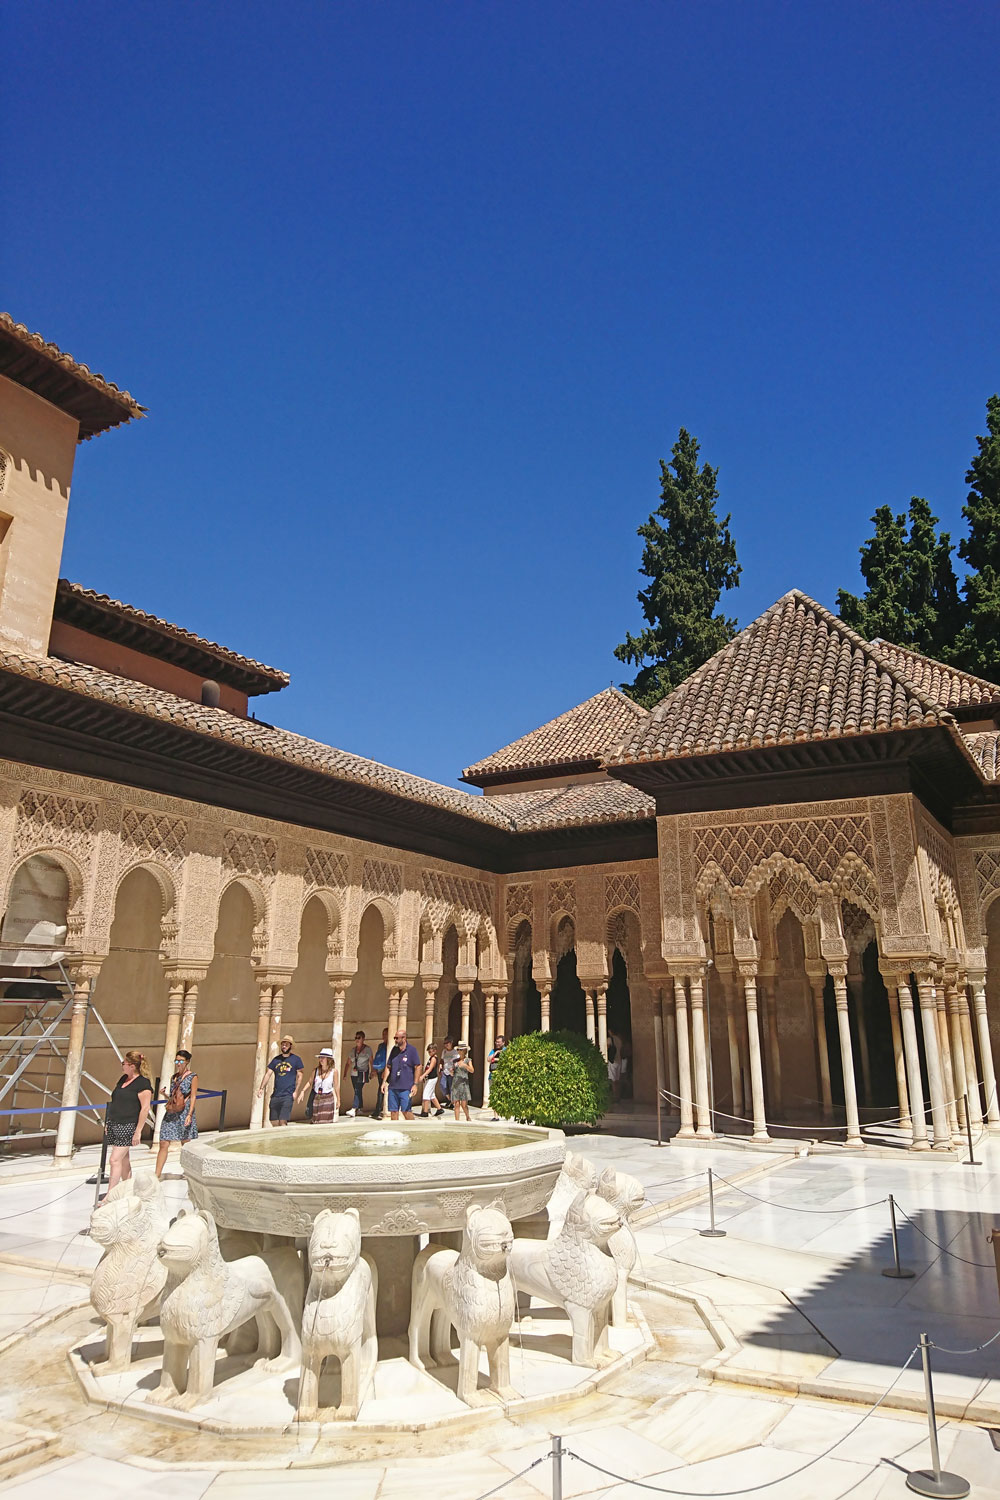 [unbezahlte werbung]Die Paläste der Alhambra